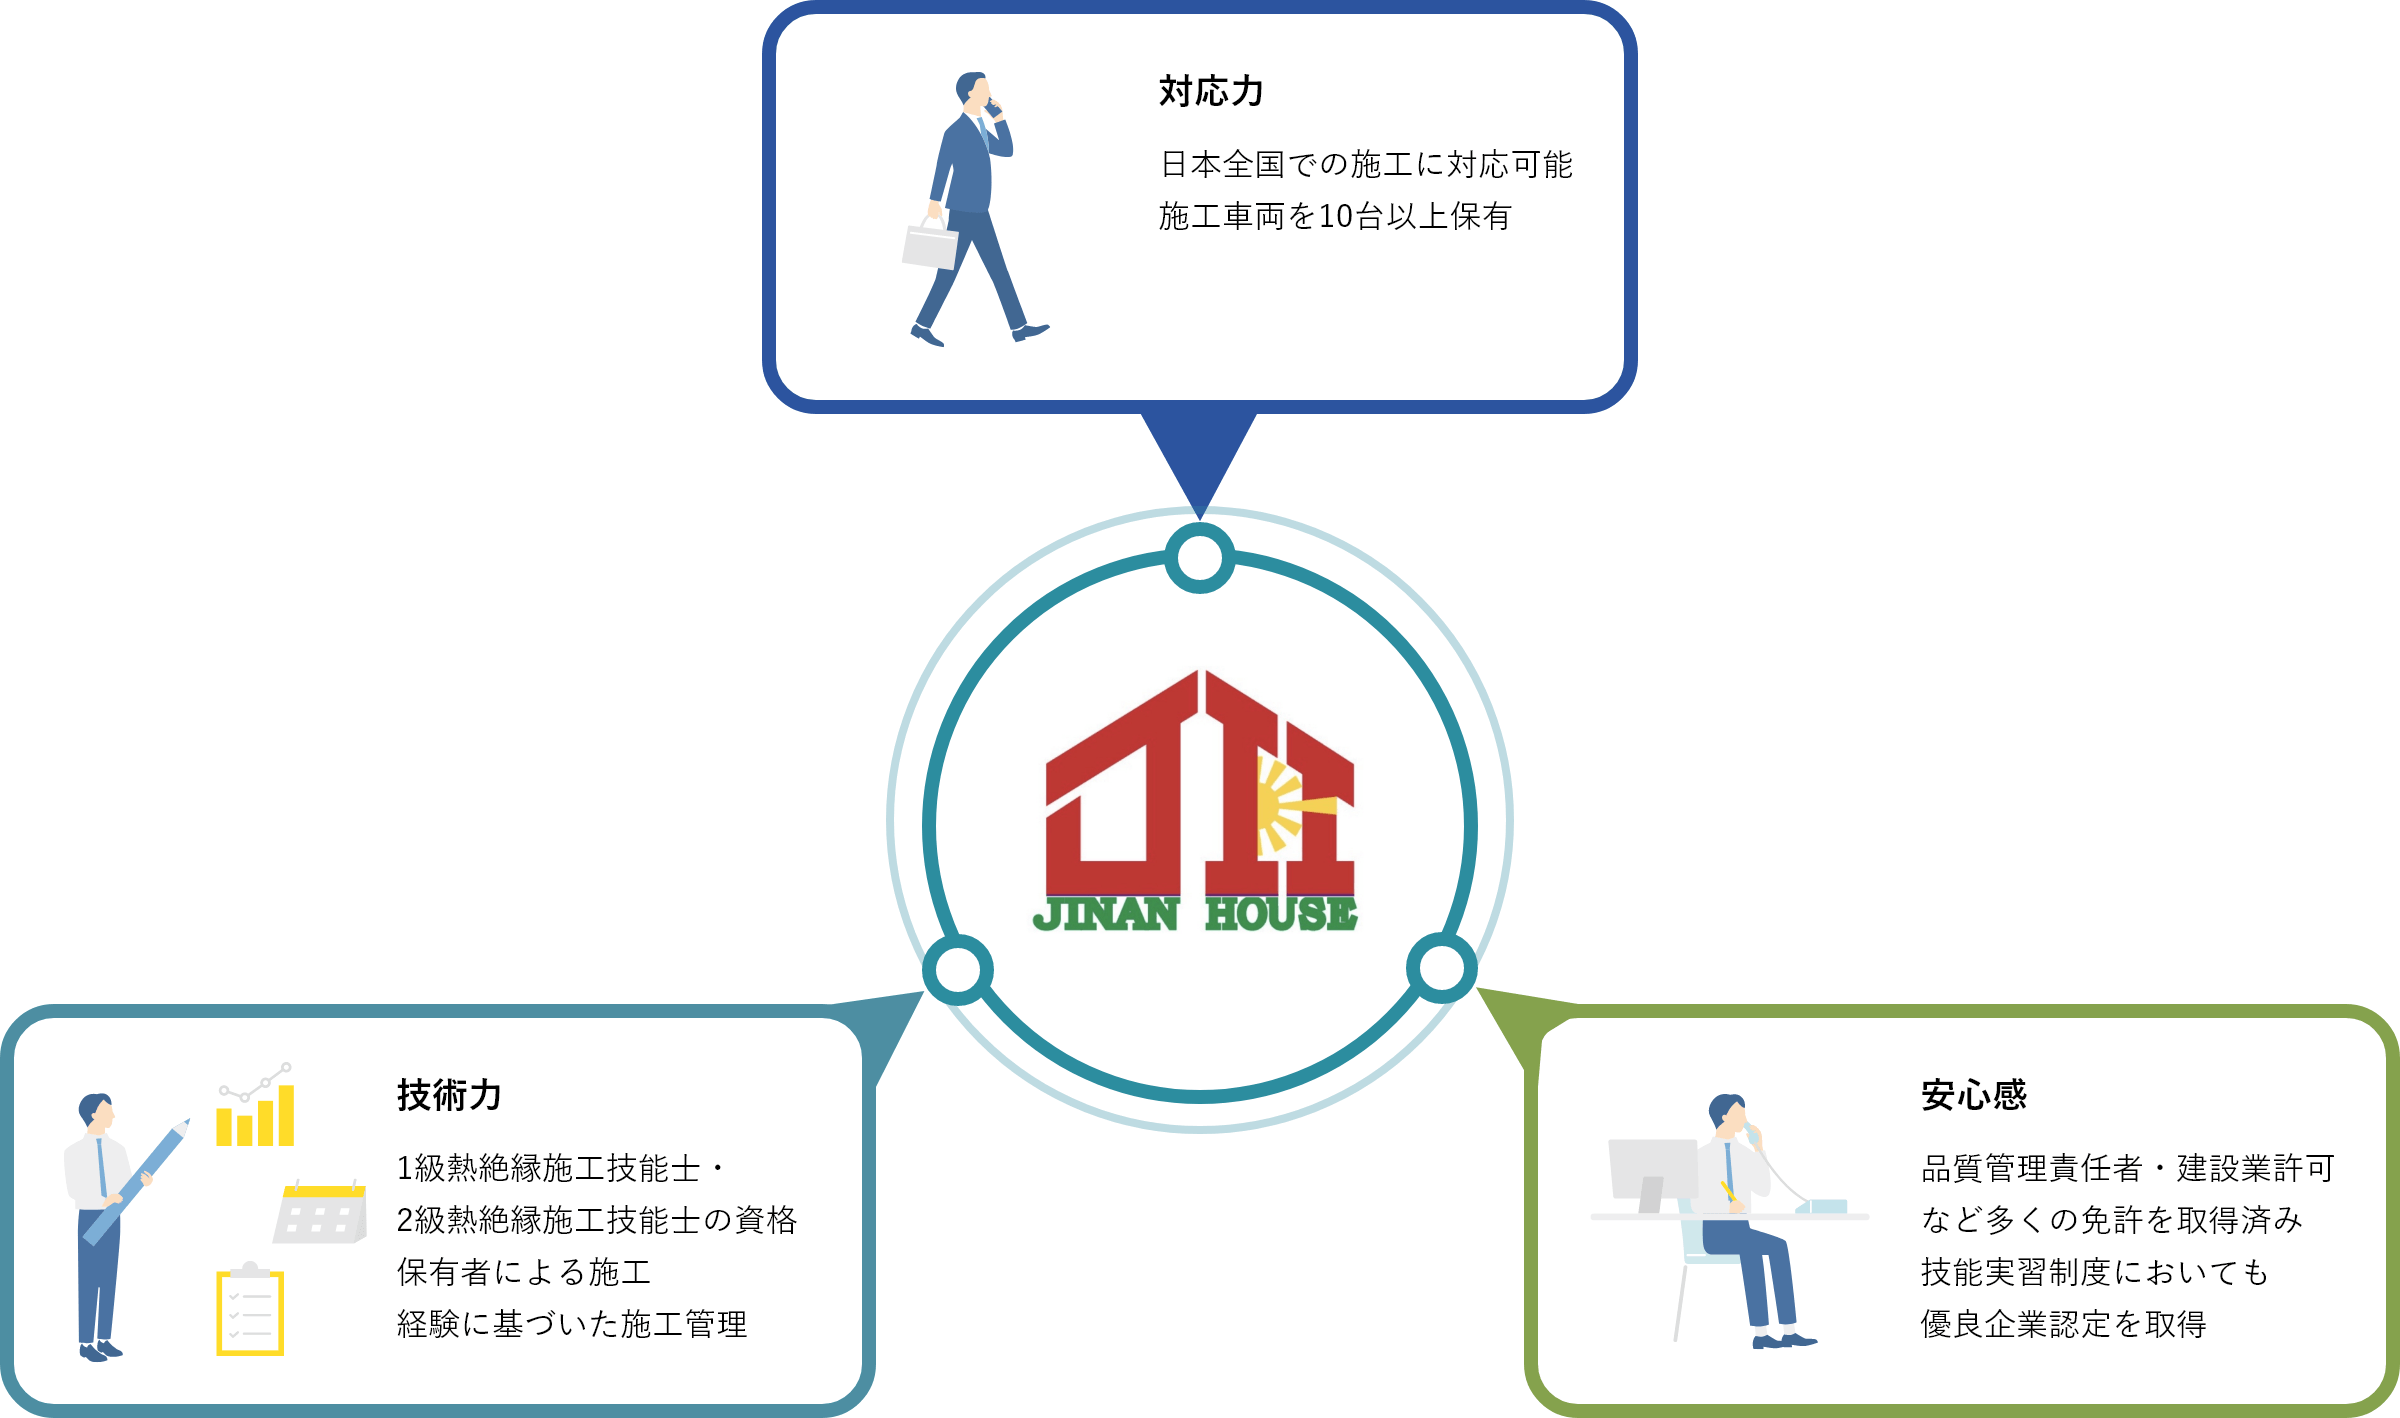 対応力　日本全国での施工に対応可能。施工車両を10台以上保有。　技術力　1級熱絶縁施工技能士・2級熱絶縁施工技能士の資格。保有者による施工。経験に基づいた施工管理。　安心感　品質管理責任者・建設業許可など多くの免許を取得済み。技能実習制度においても優良企業認定を取得。